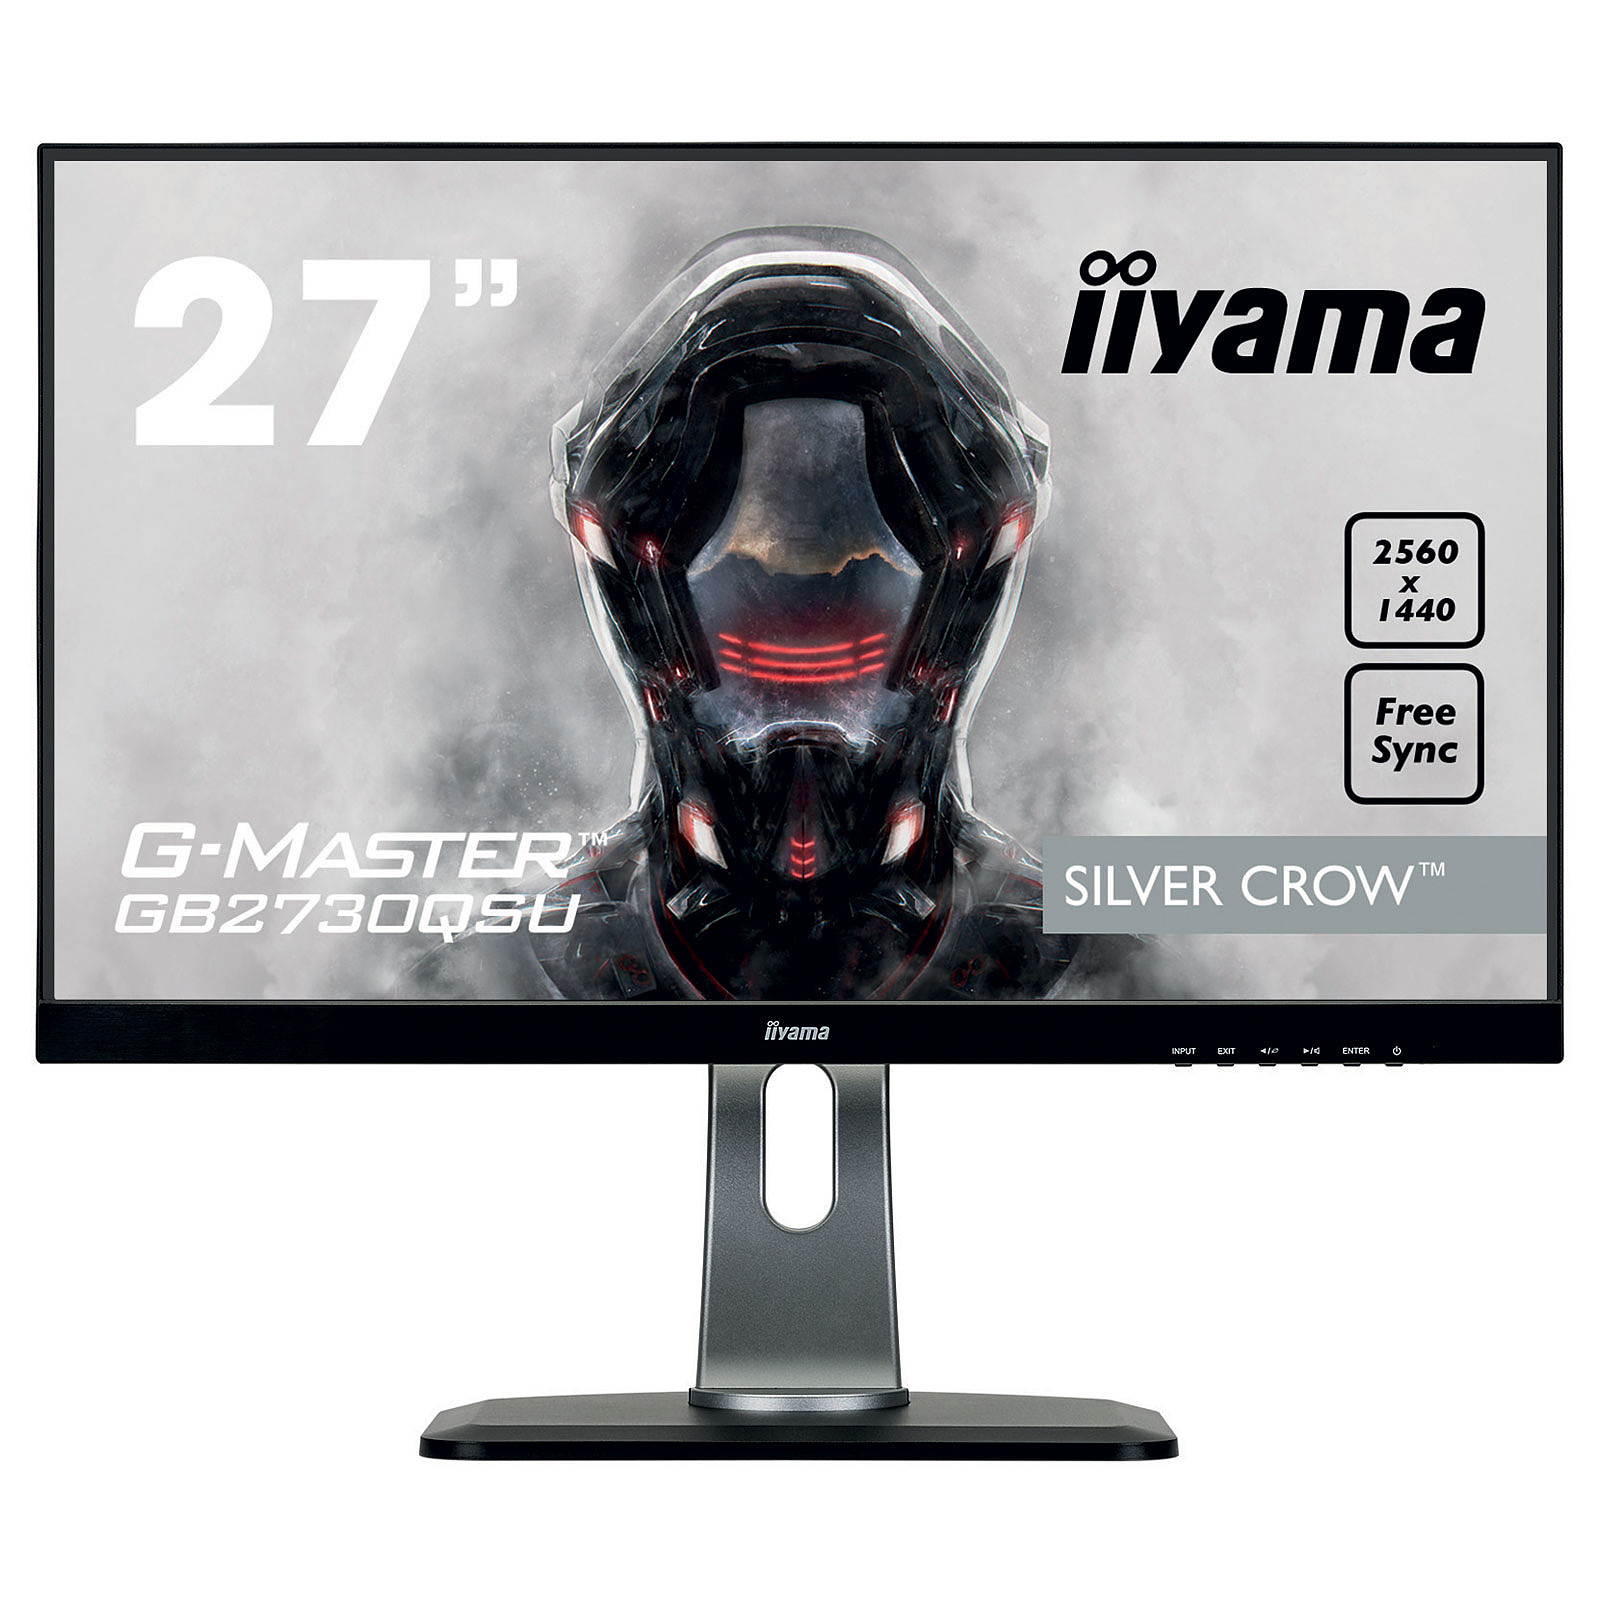 iiyama 27" LED - G-MASTER GB2730QSU-B1 - Ecran PC iiyama